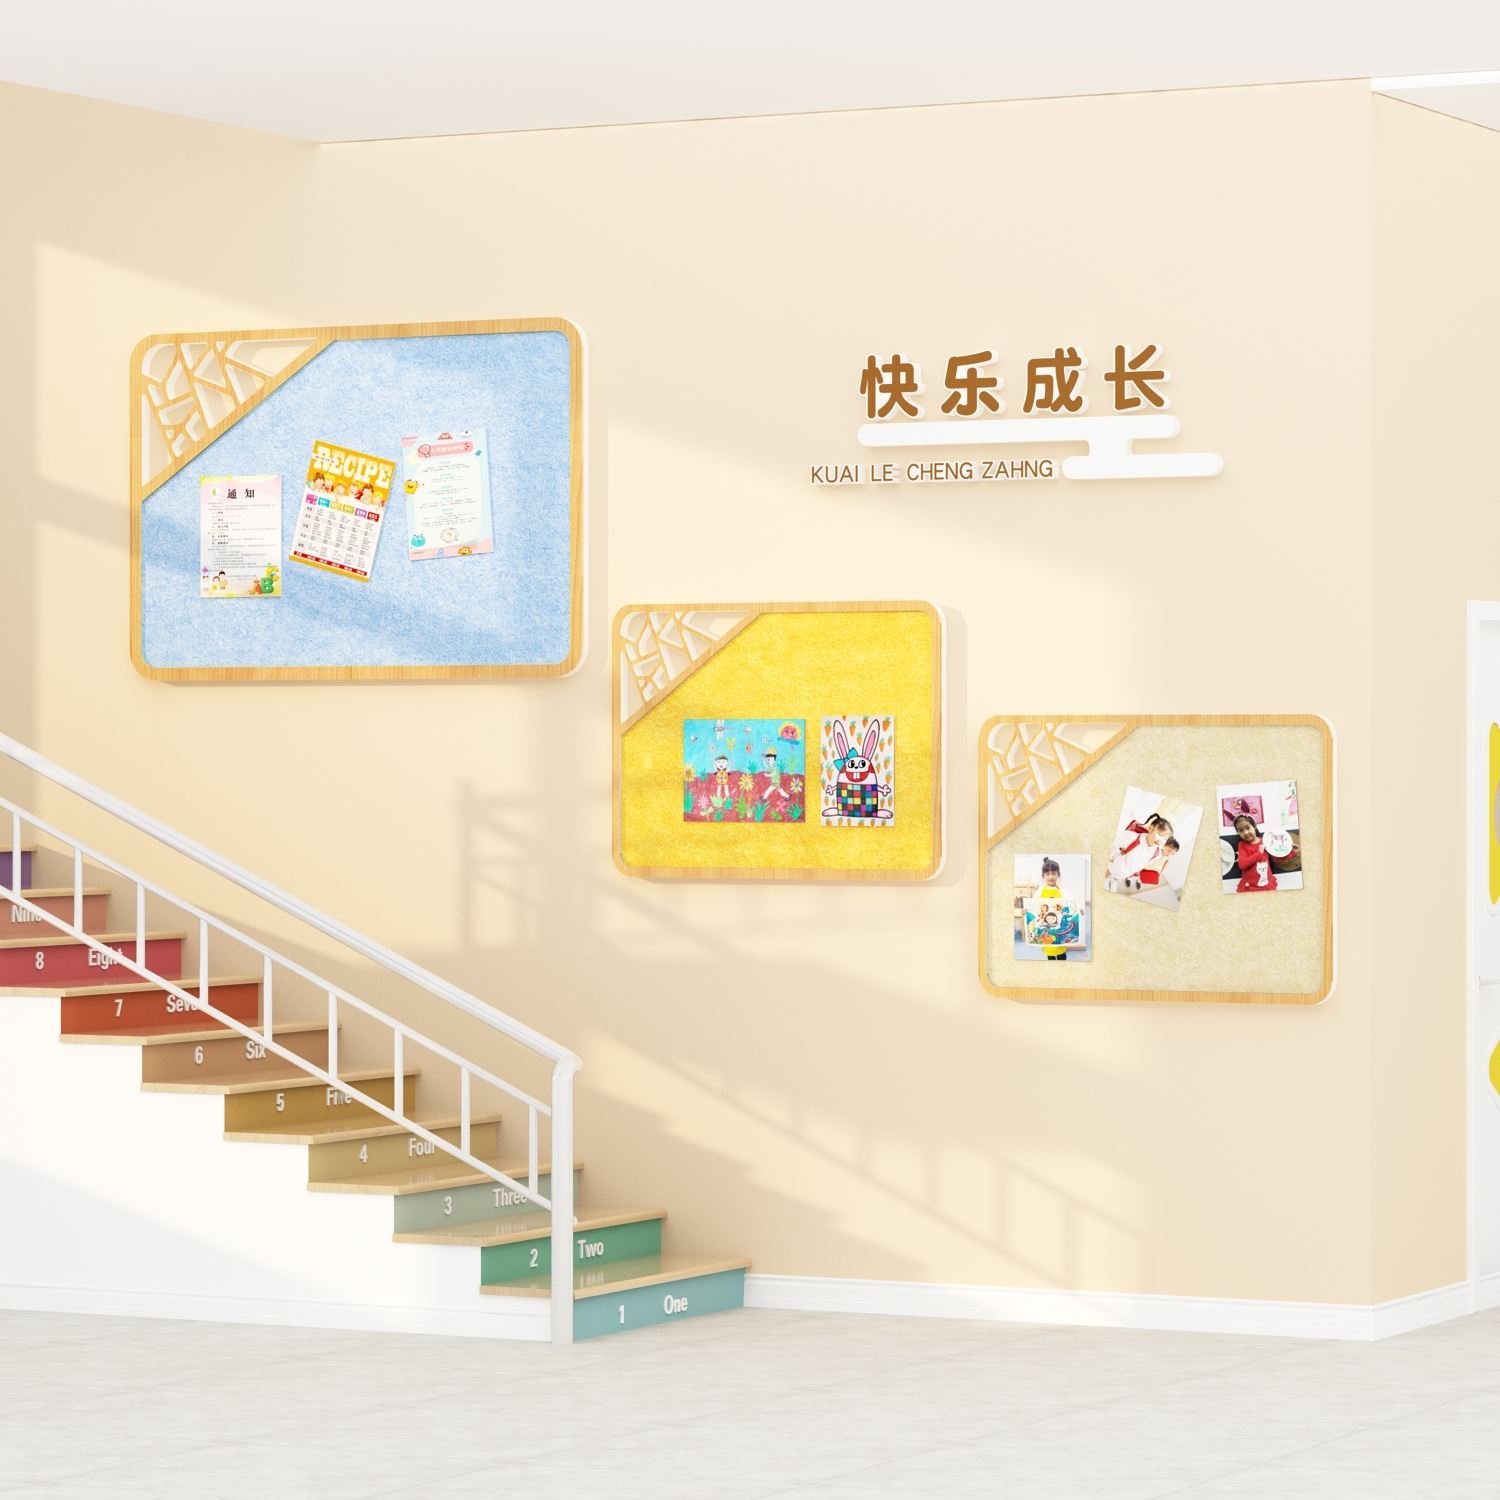 新款毛毡板幼儿园环创走廊过道墙面装饰材料成品公告栏展示板文化 - 图2